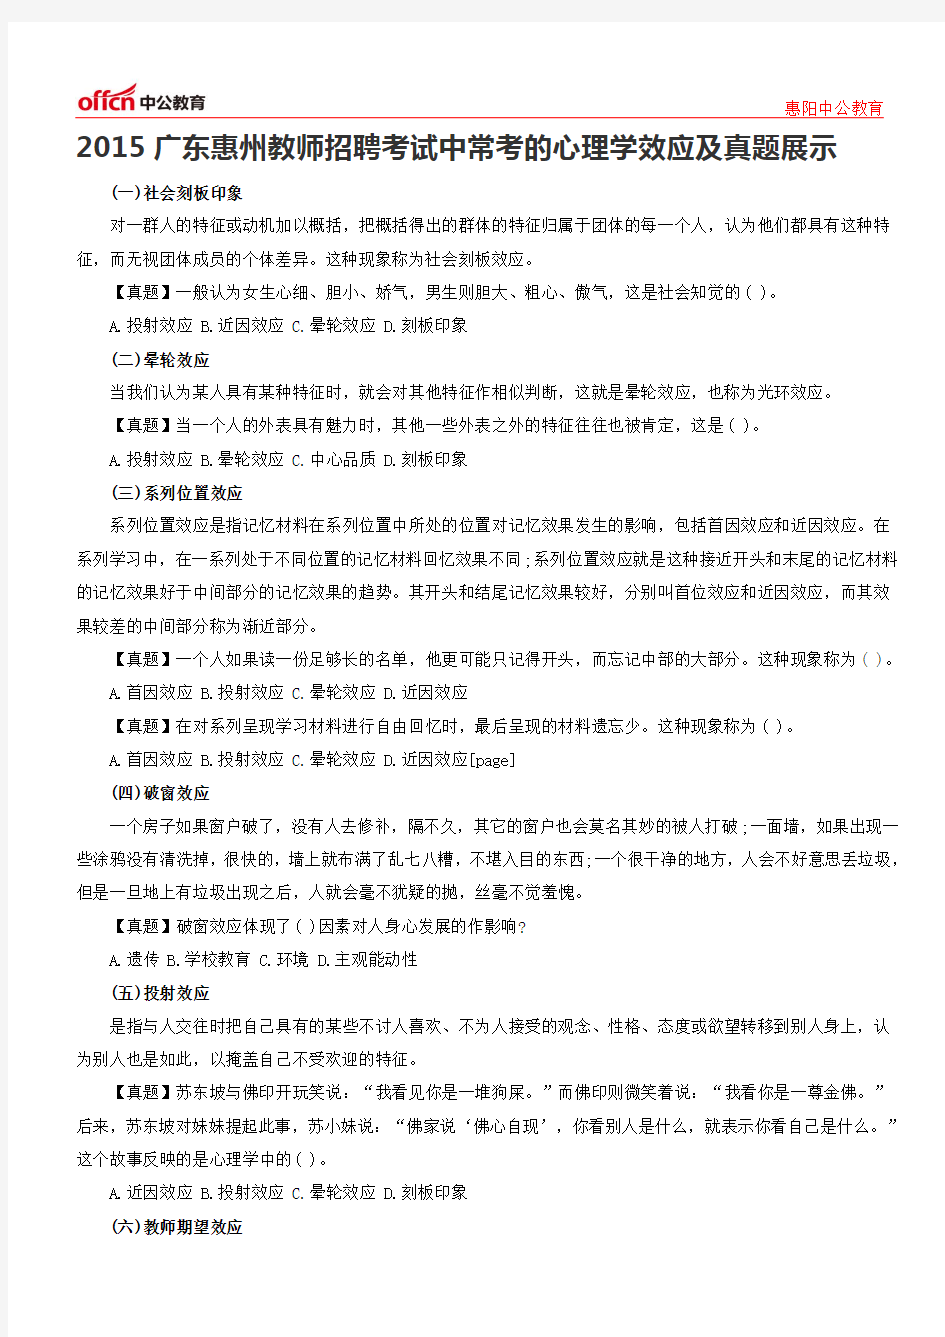 2015广东惠州教师招聘考试中常考的心理学效应及真题展示